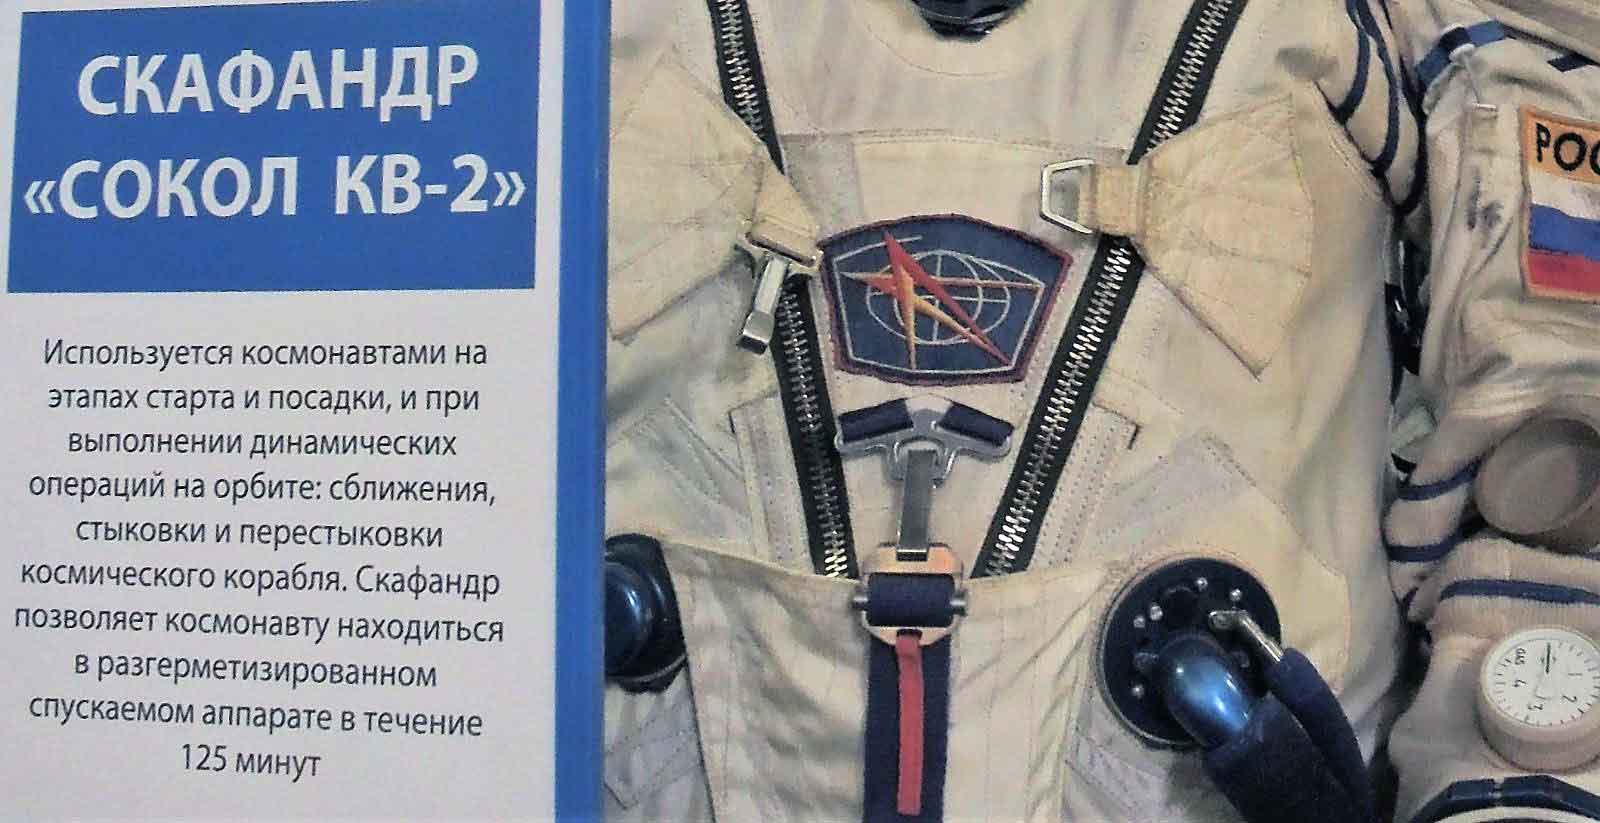 Космонавт из Новочеркасска Николай Чуб отправится в годичный полет на МКС